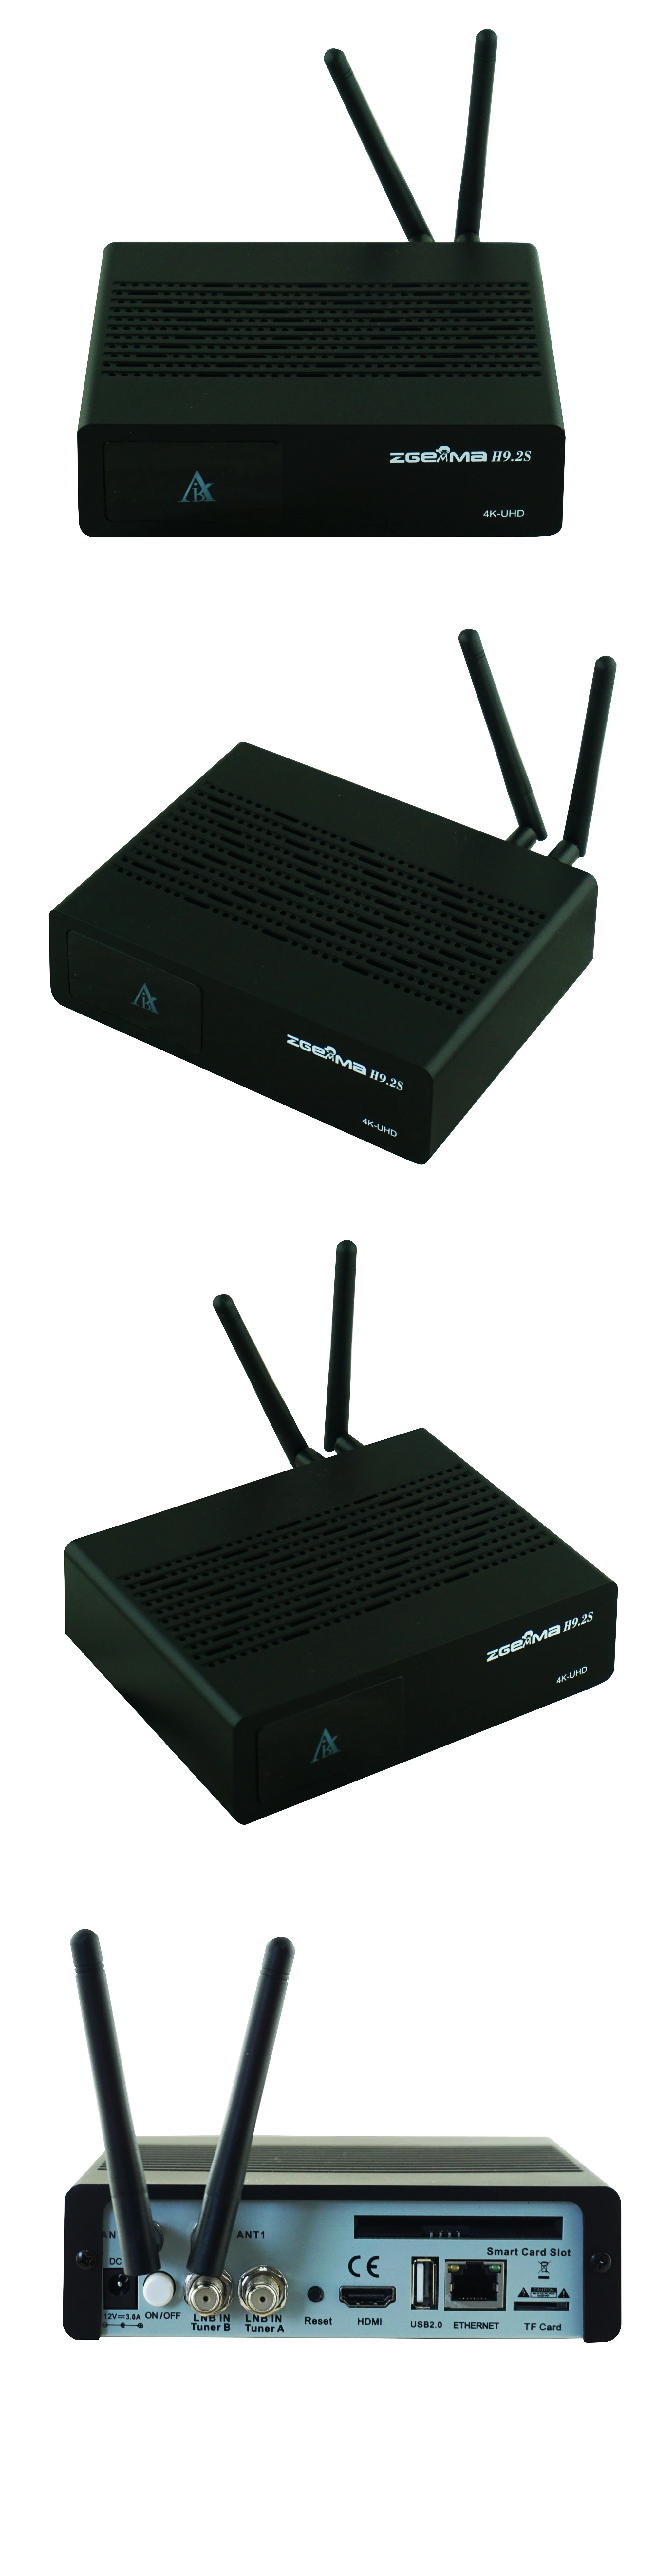 2 шт./партия zgemma h9.2s двойной dvb s2x 4K спутниковый ТВ-приставка со встроенным wifi